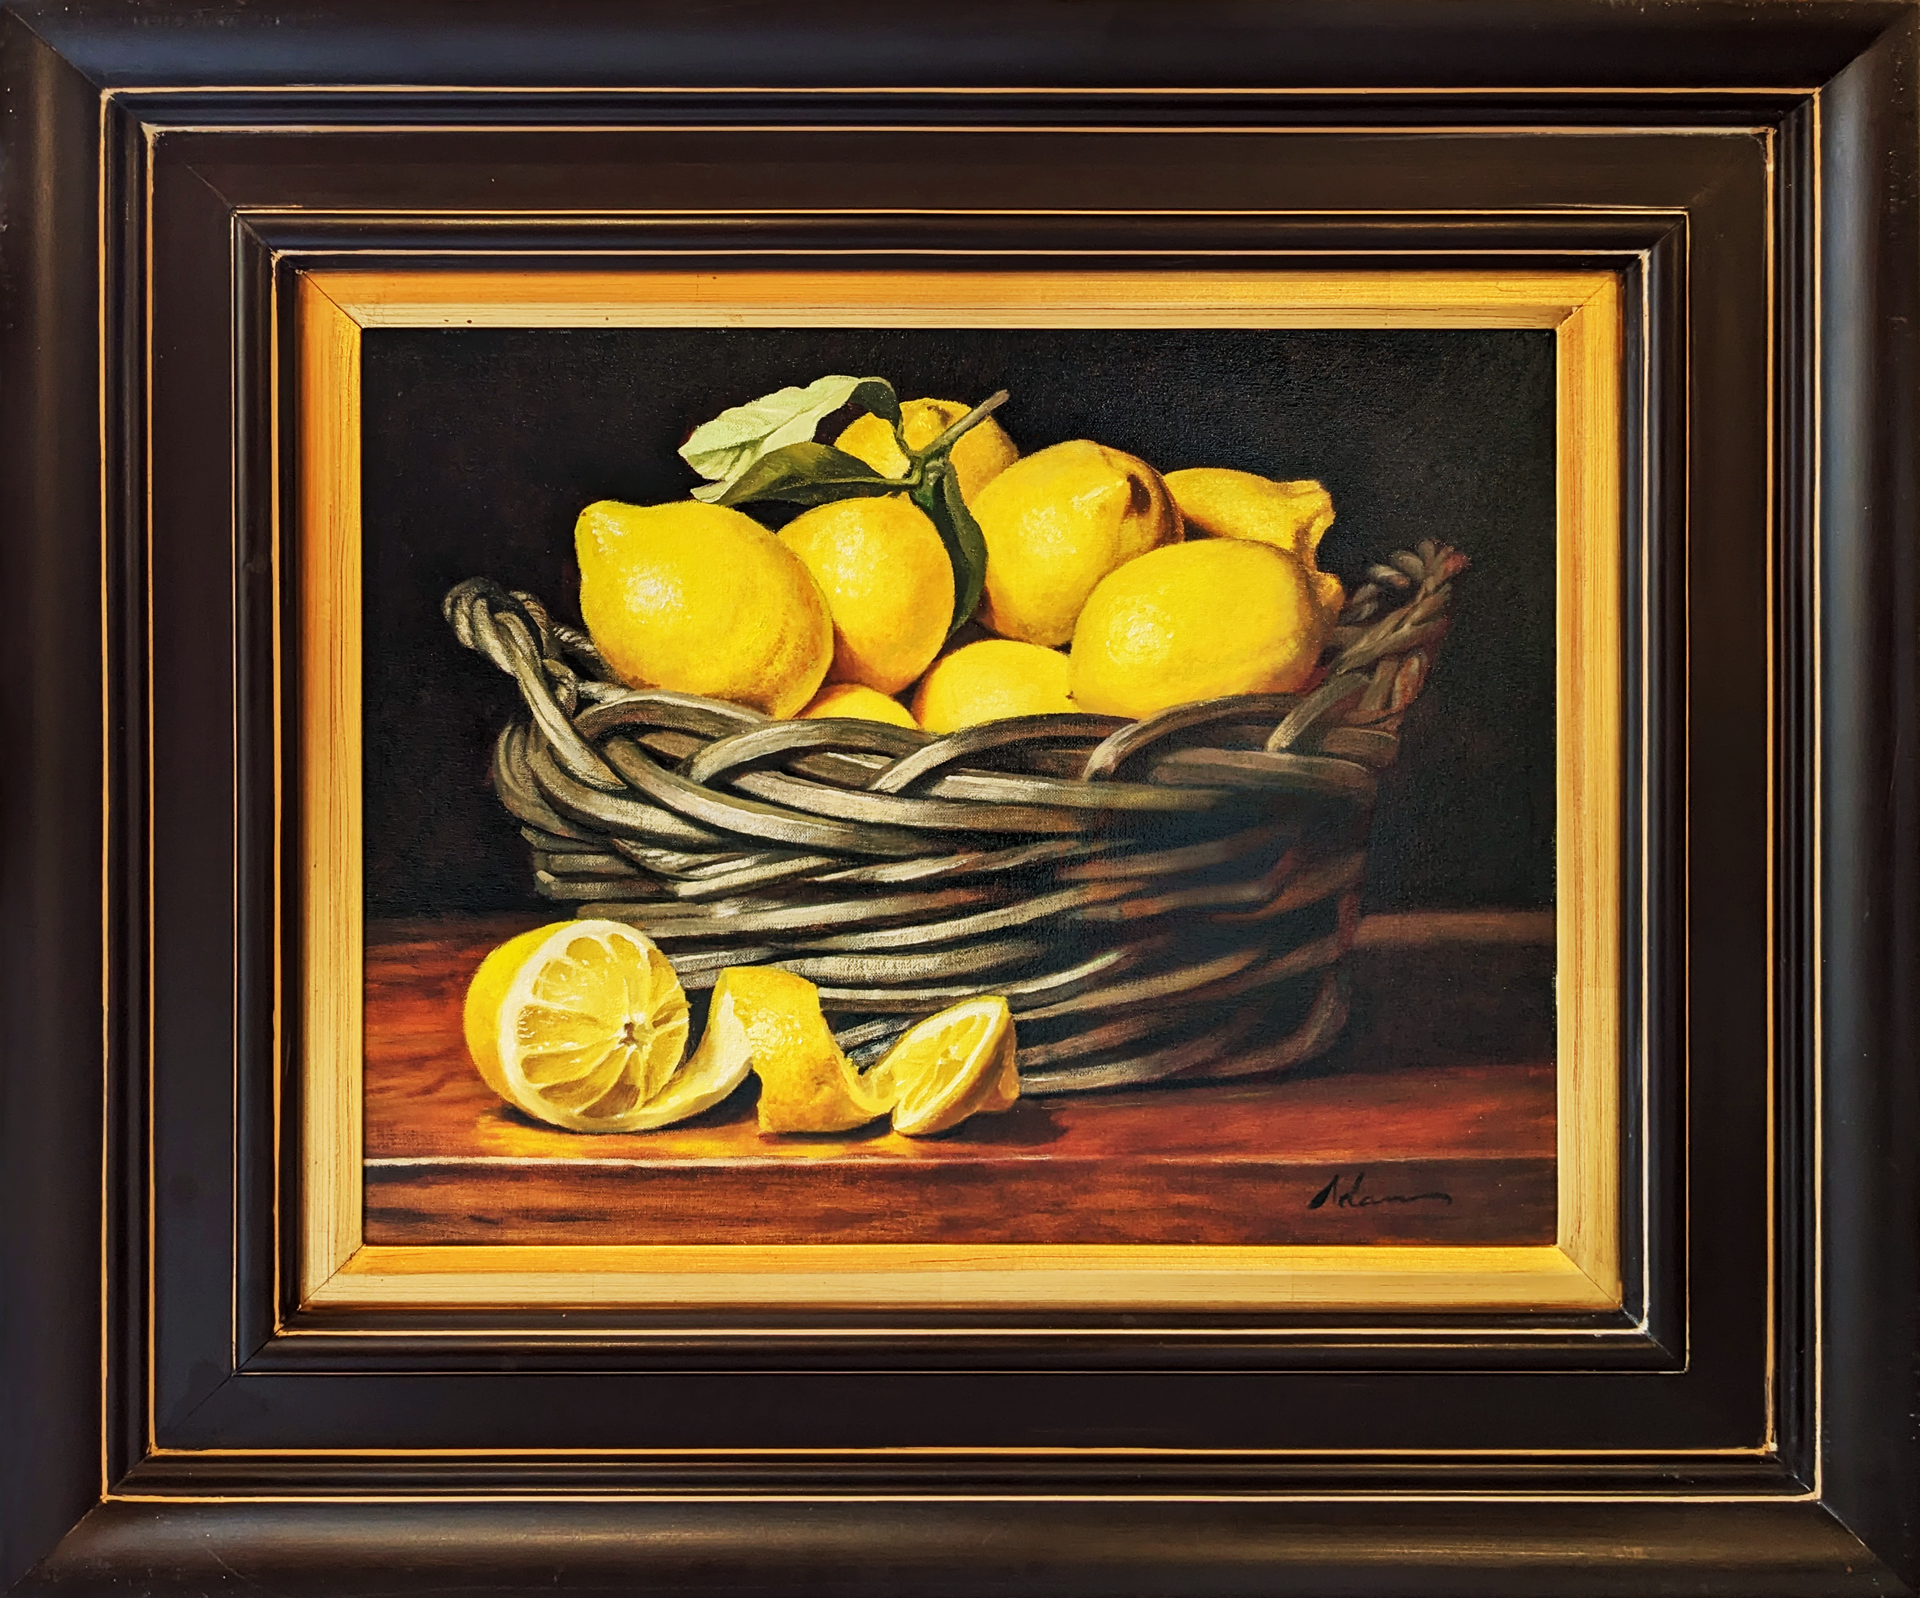 Lemon Basket by Michael Lynn Adams